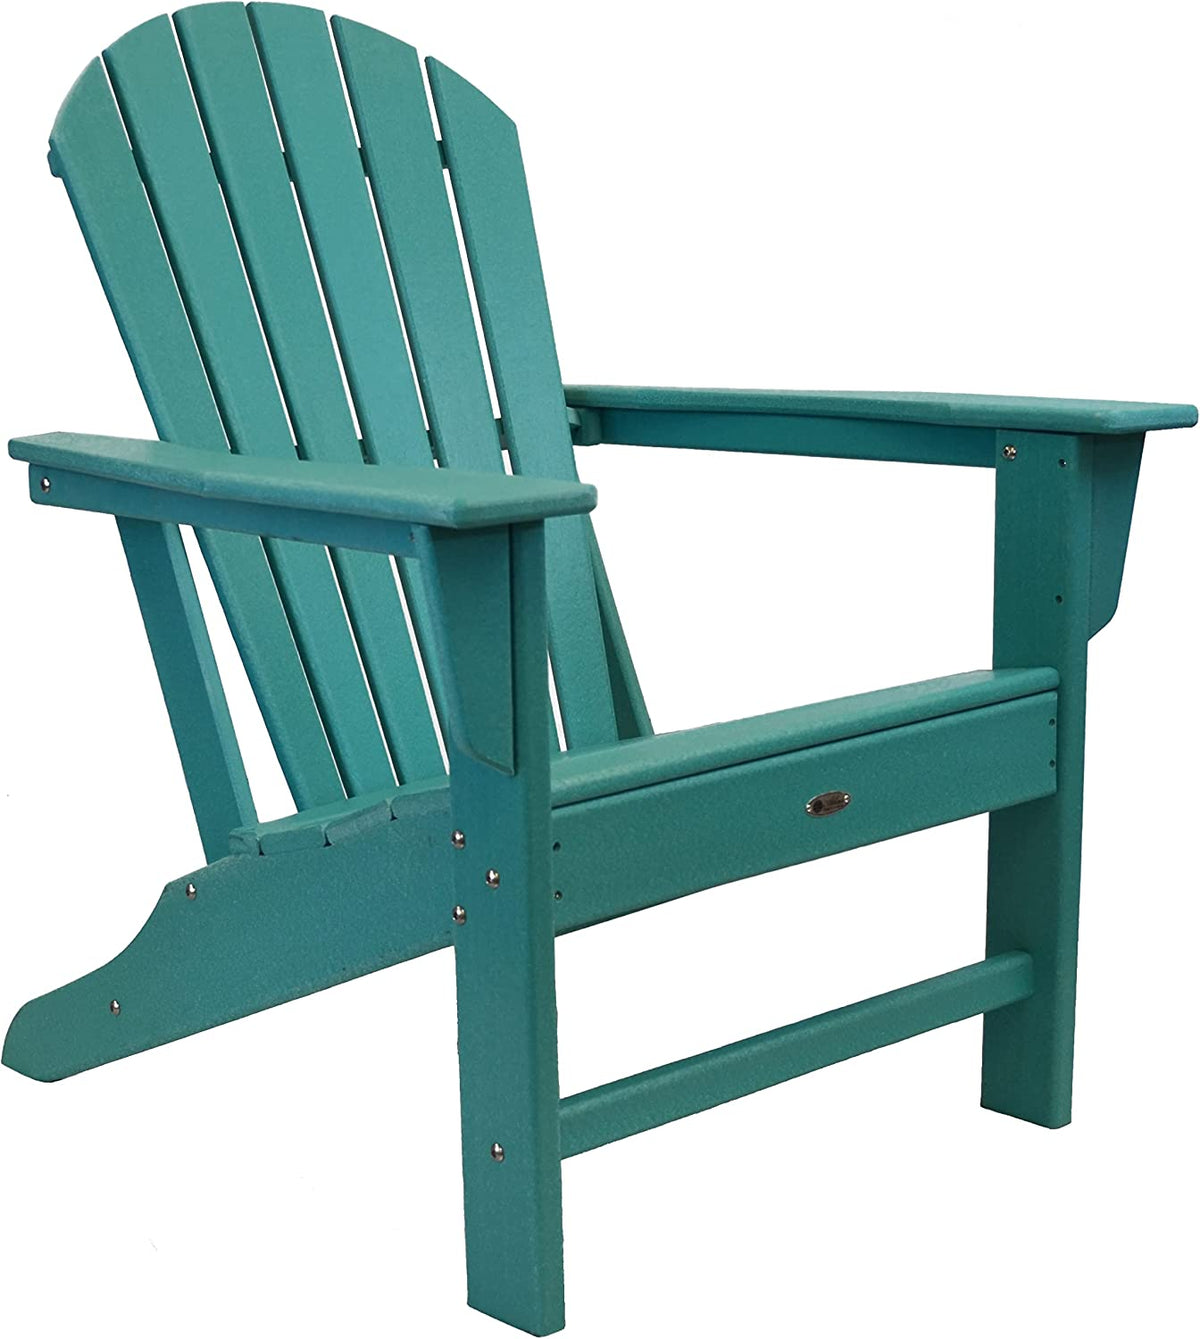 Adirondack Chair by Atlas, Surf City - Aqua